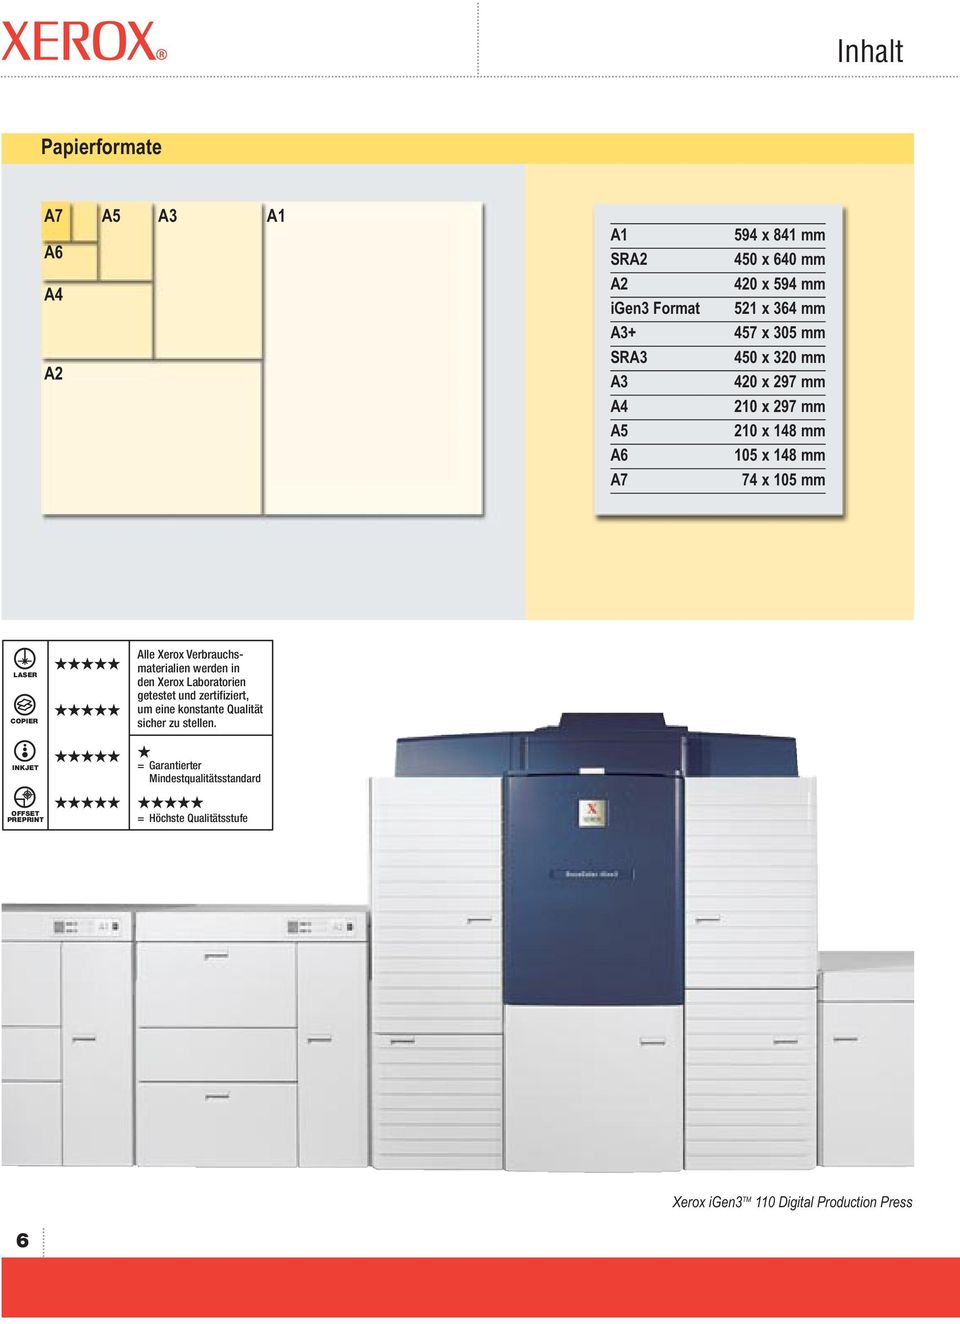 Verbrauchsmaterialien werden in den Xerox Laboratorien getestet und zertifiziert, um eine konstante Qualität sicher zu